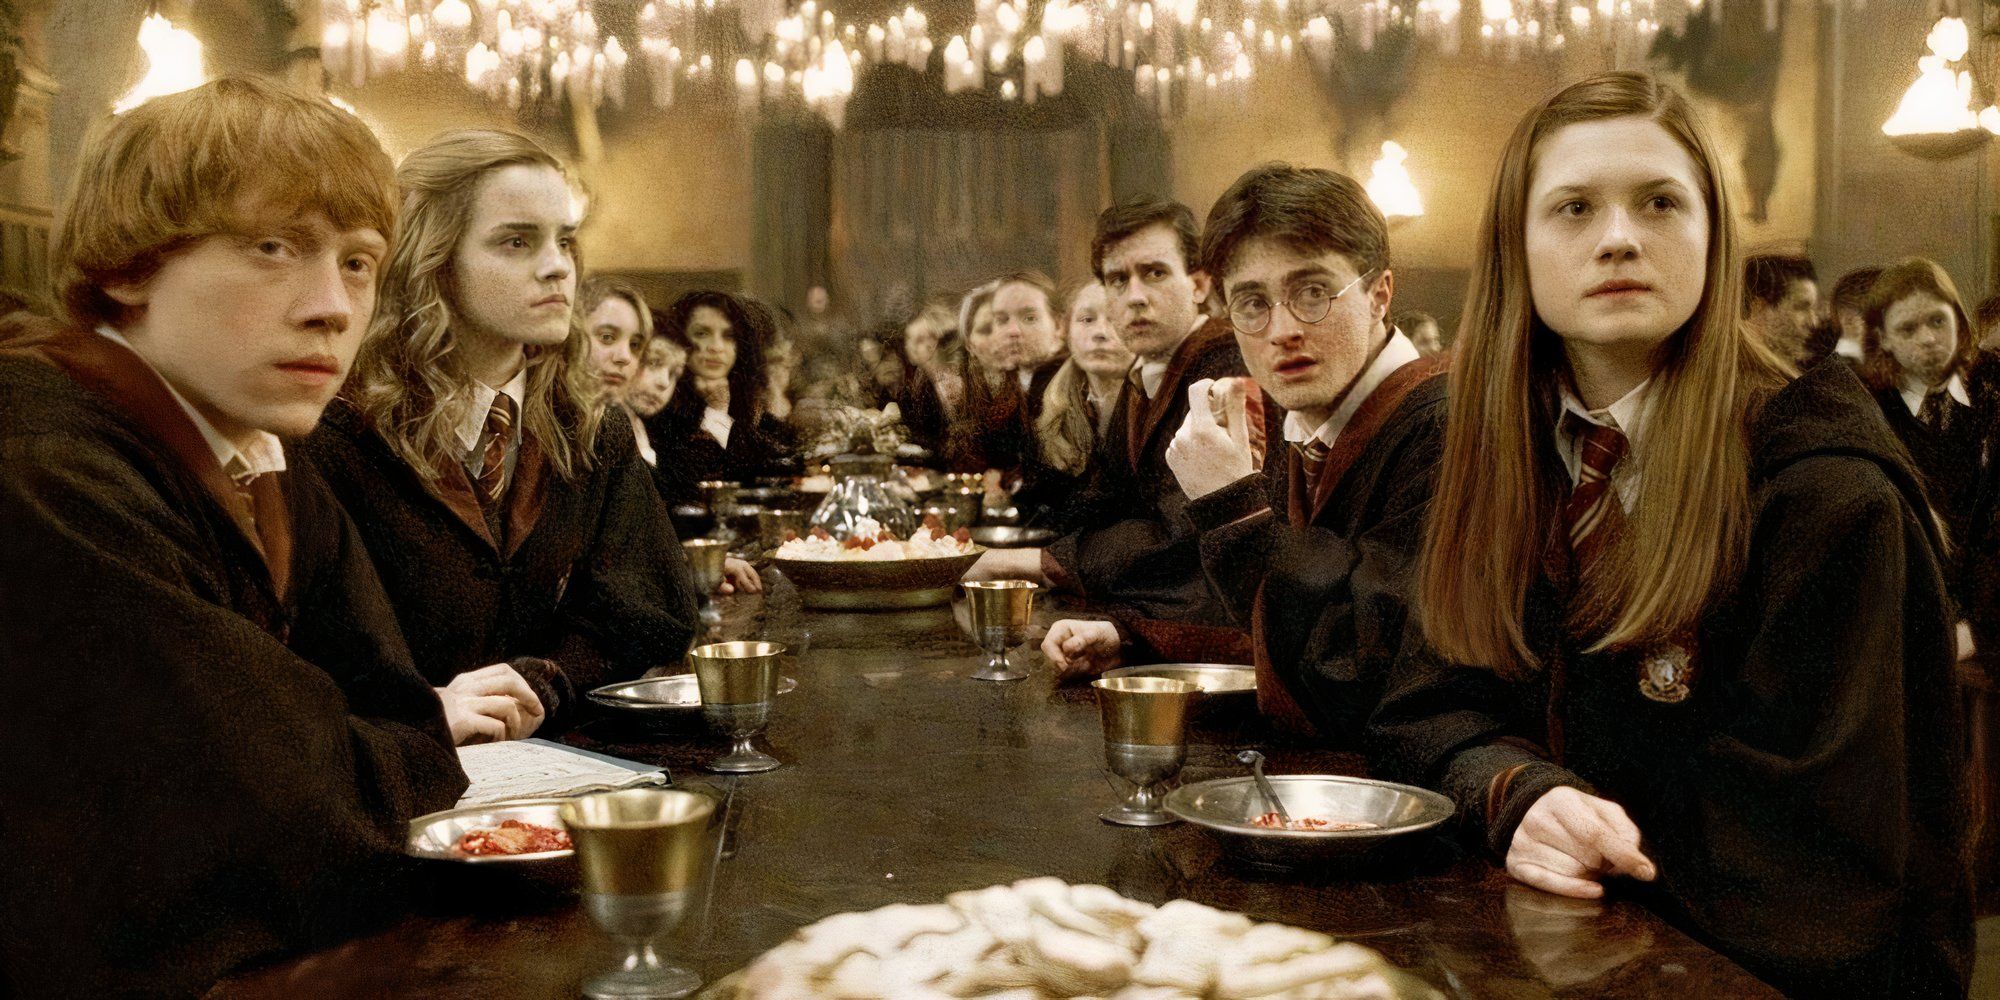 Escola de Magia e Bruxaria de Hogwarts - A Franquia Harry Potter (1)